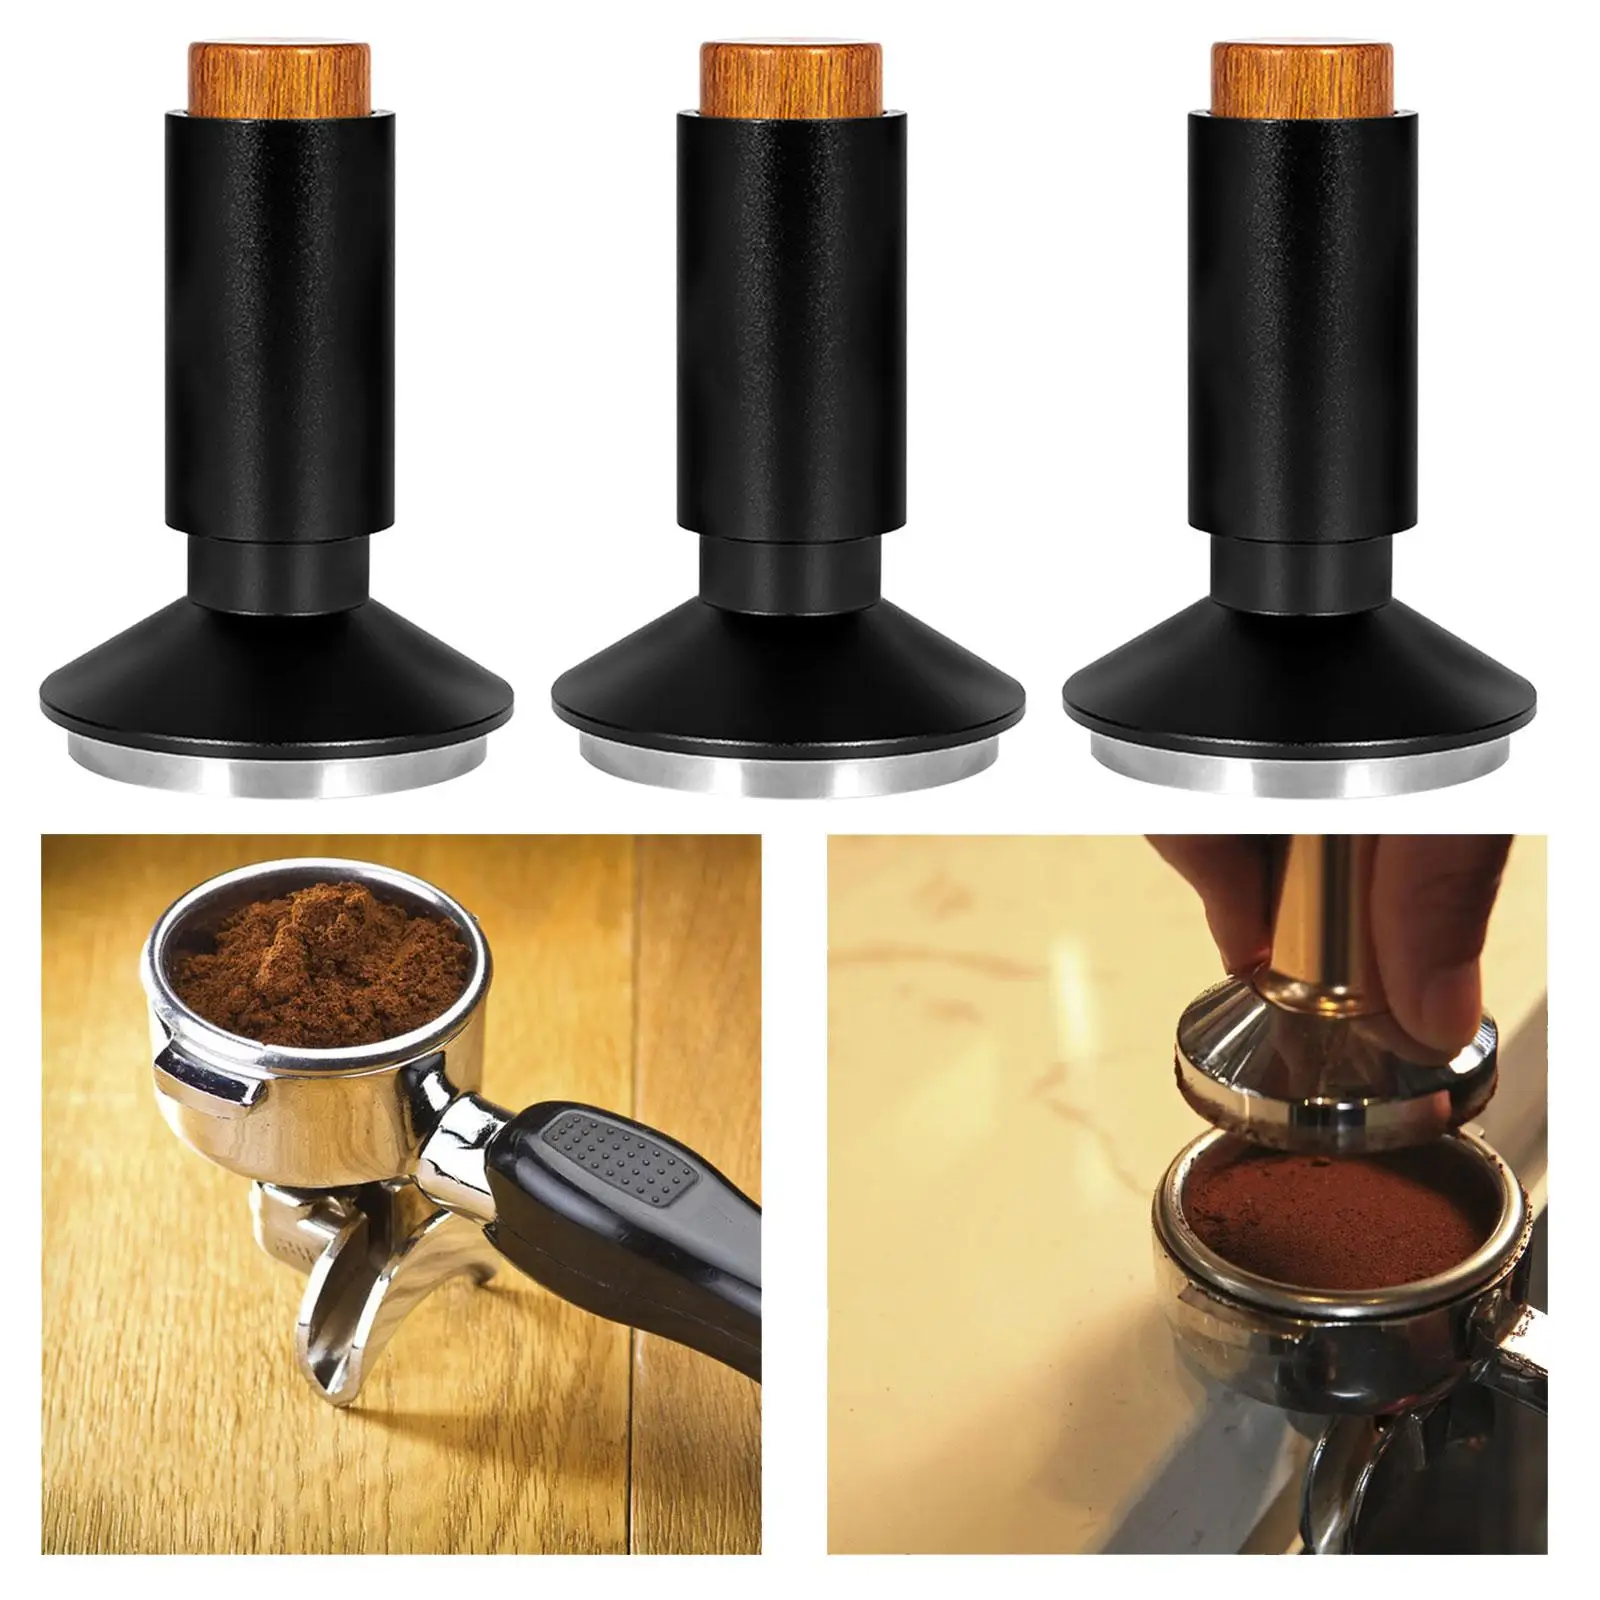 2 in 1 Espresso Tamper Coffee Powder Distribution Calibrated for Coffee Maker Cafe Bar Barista Gift Accessories Espresso Machine